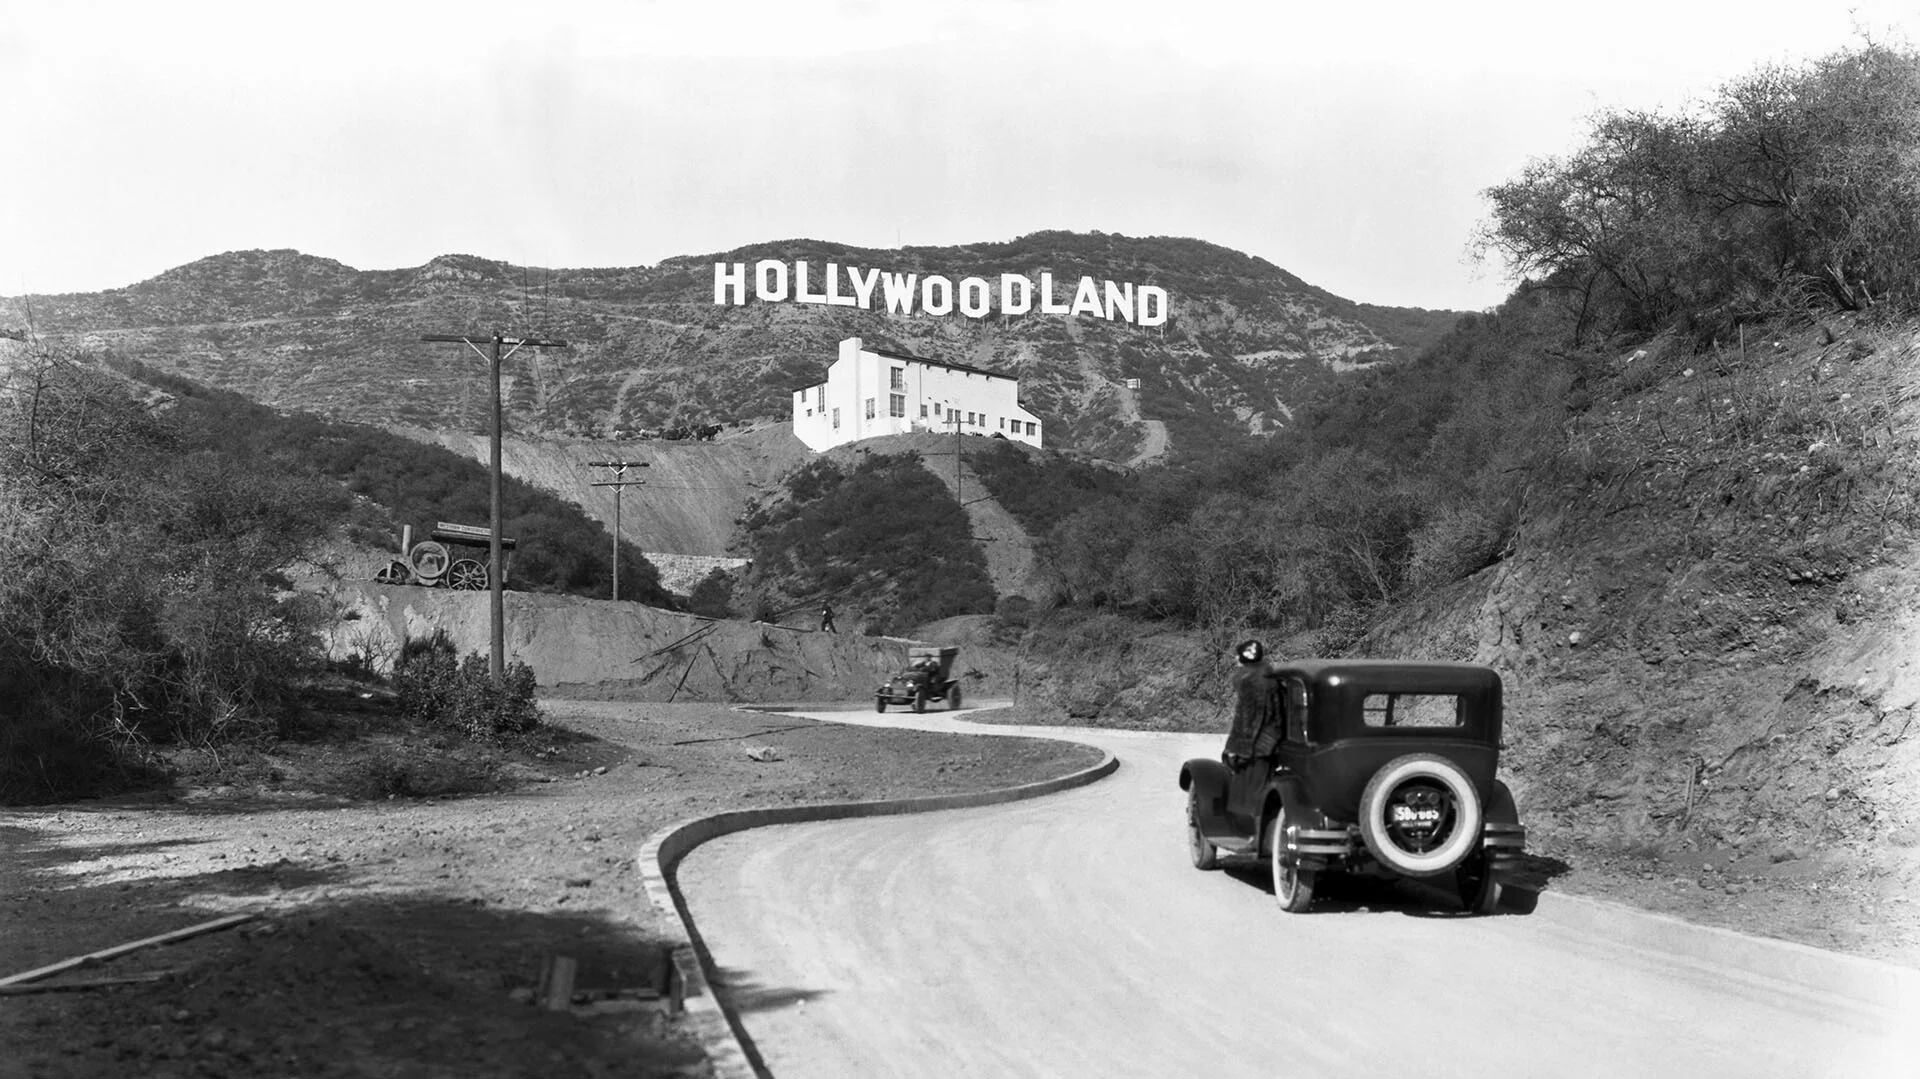 Un cartel anuncia la apertura de la urbanización Hollywoodland en las colinas de Mulholland Drive. El edificio blanco bajo el cartel es la Kanst Art Gallery, inaugurada el 1 de abril de 1924.(Foto: Underwood Archives/Getty Images)